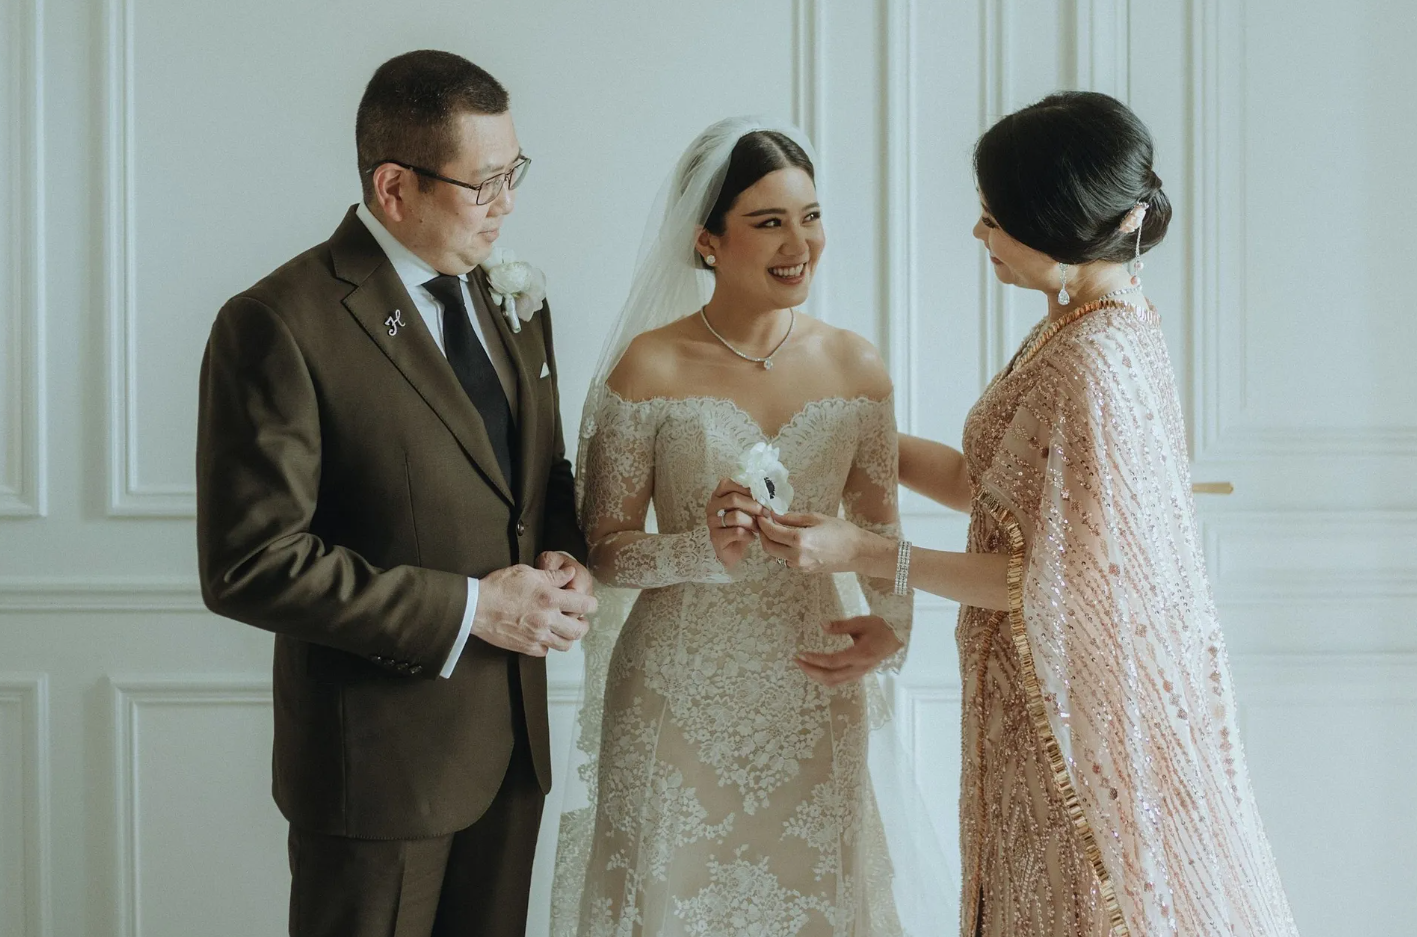 Đám cưới xa hoa trong lâu đài tại Pháp của con gái tỷ phú giàu bậc nhất Indonesia: Tính sơ chi phí cũng đủ 